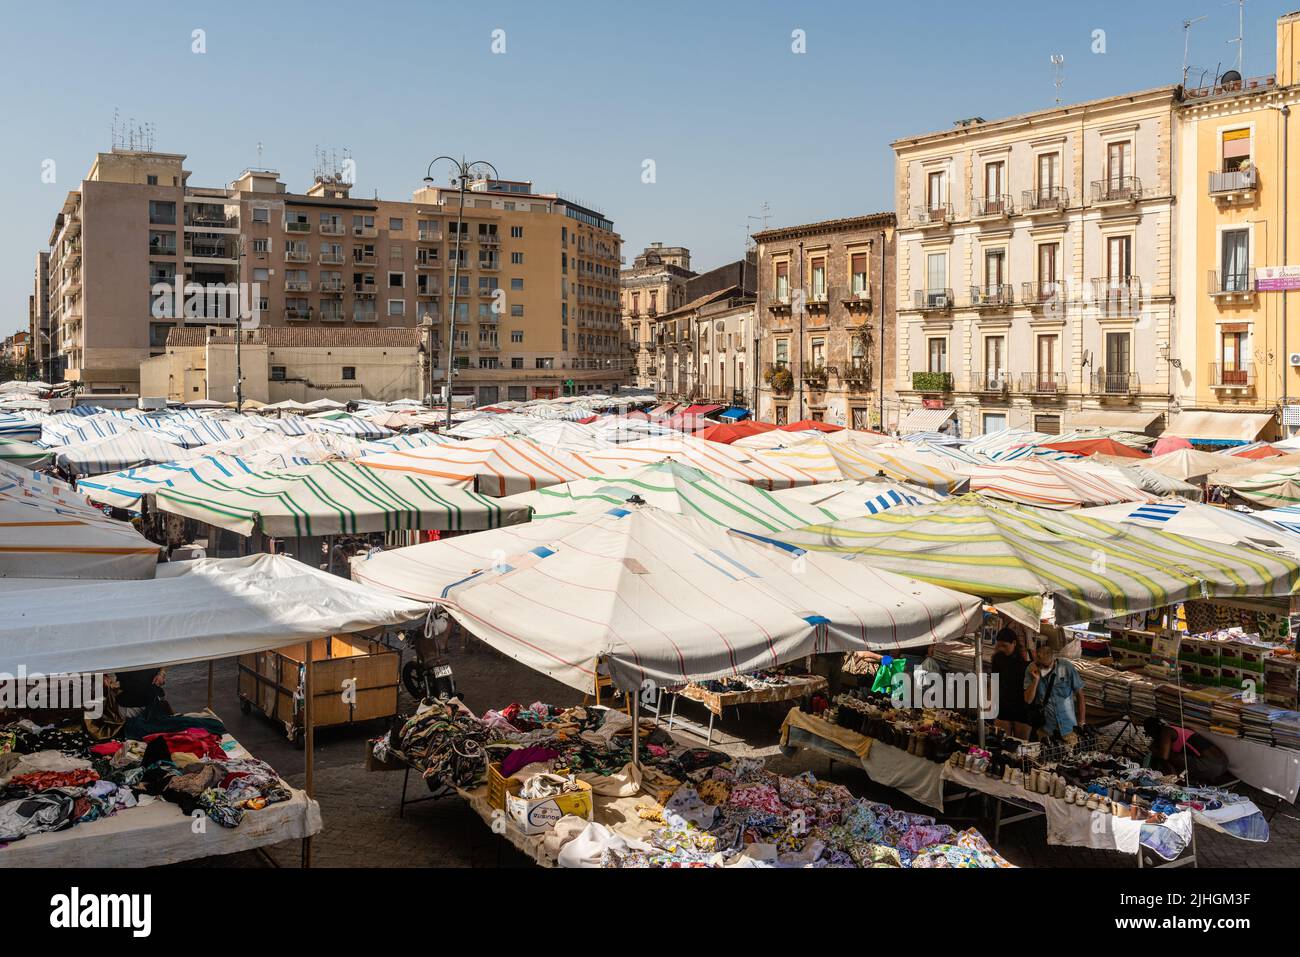 Le marché quotidien de la rue Fera 'o Luni sur la Piazza Carlo Alberto, dans le centre de Catane, en Sicile. C'est l'un des plus anciens marchés de plein air de la ville Banque D'Images